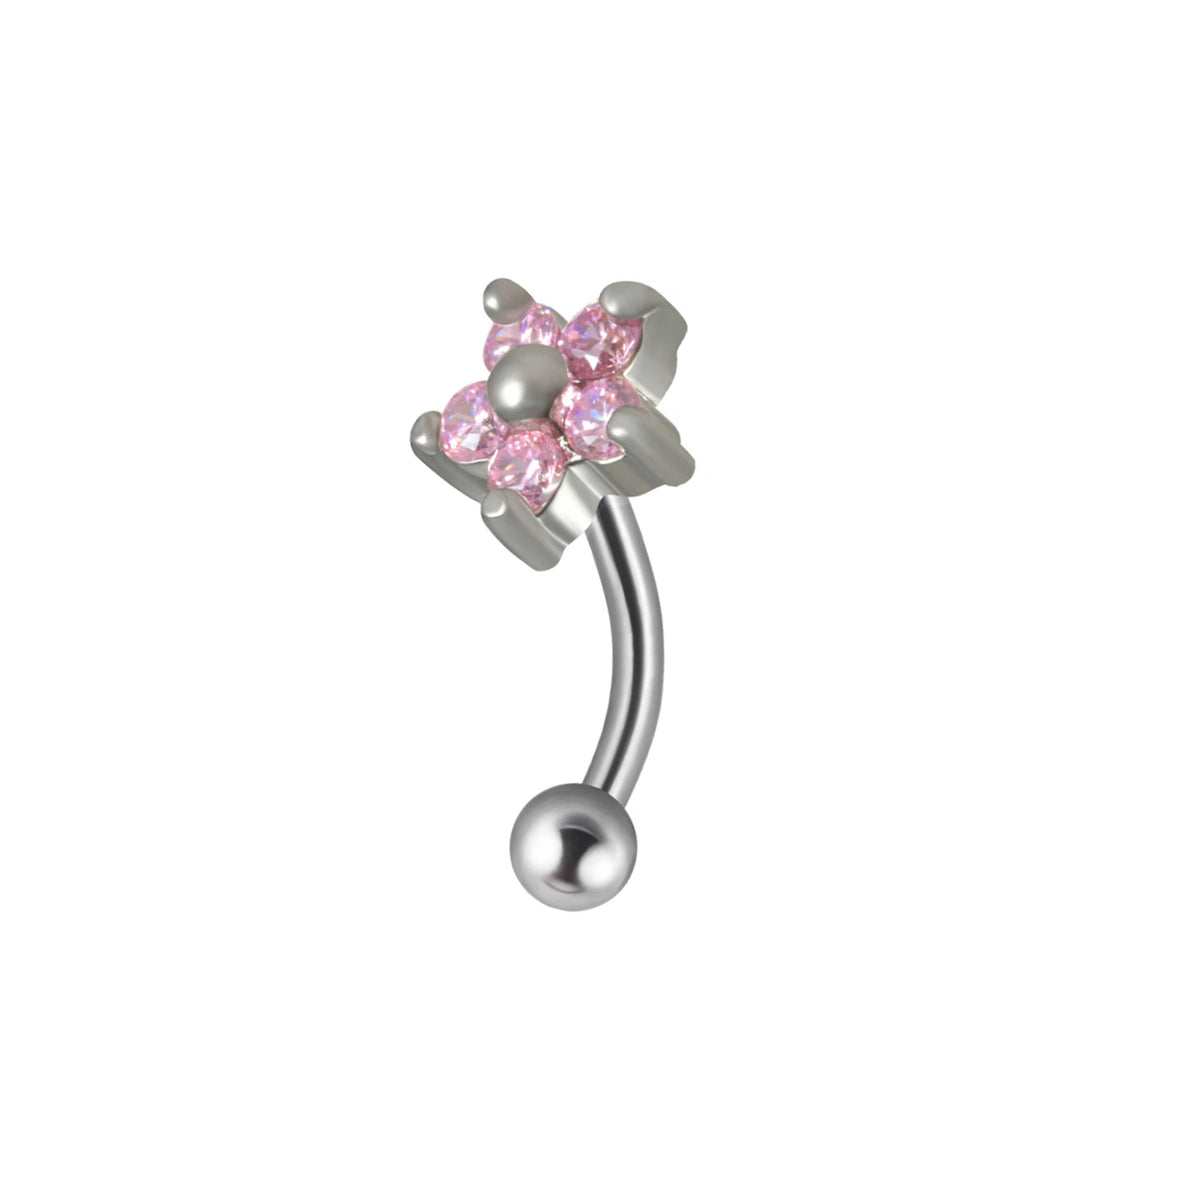 Bonito piercing jestrum con barra curva de titanio con diamantes arcoíris de color rosa claro